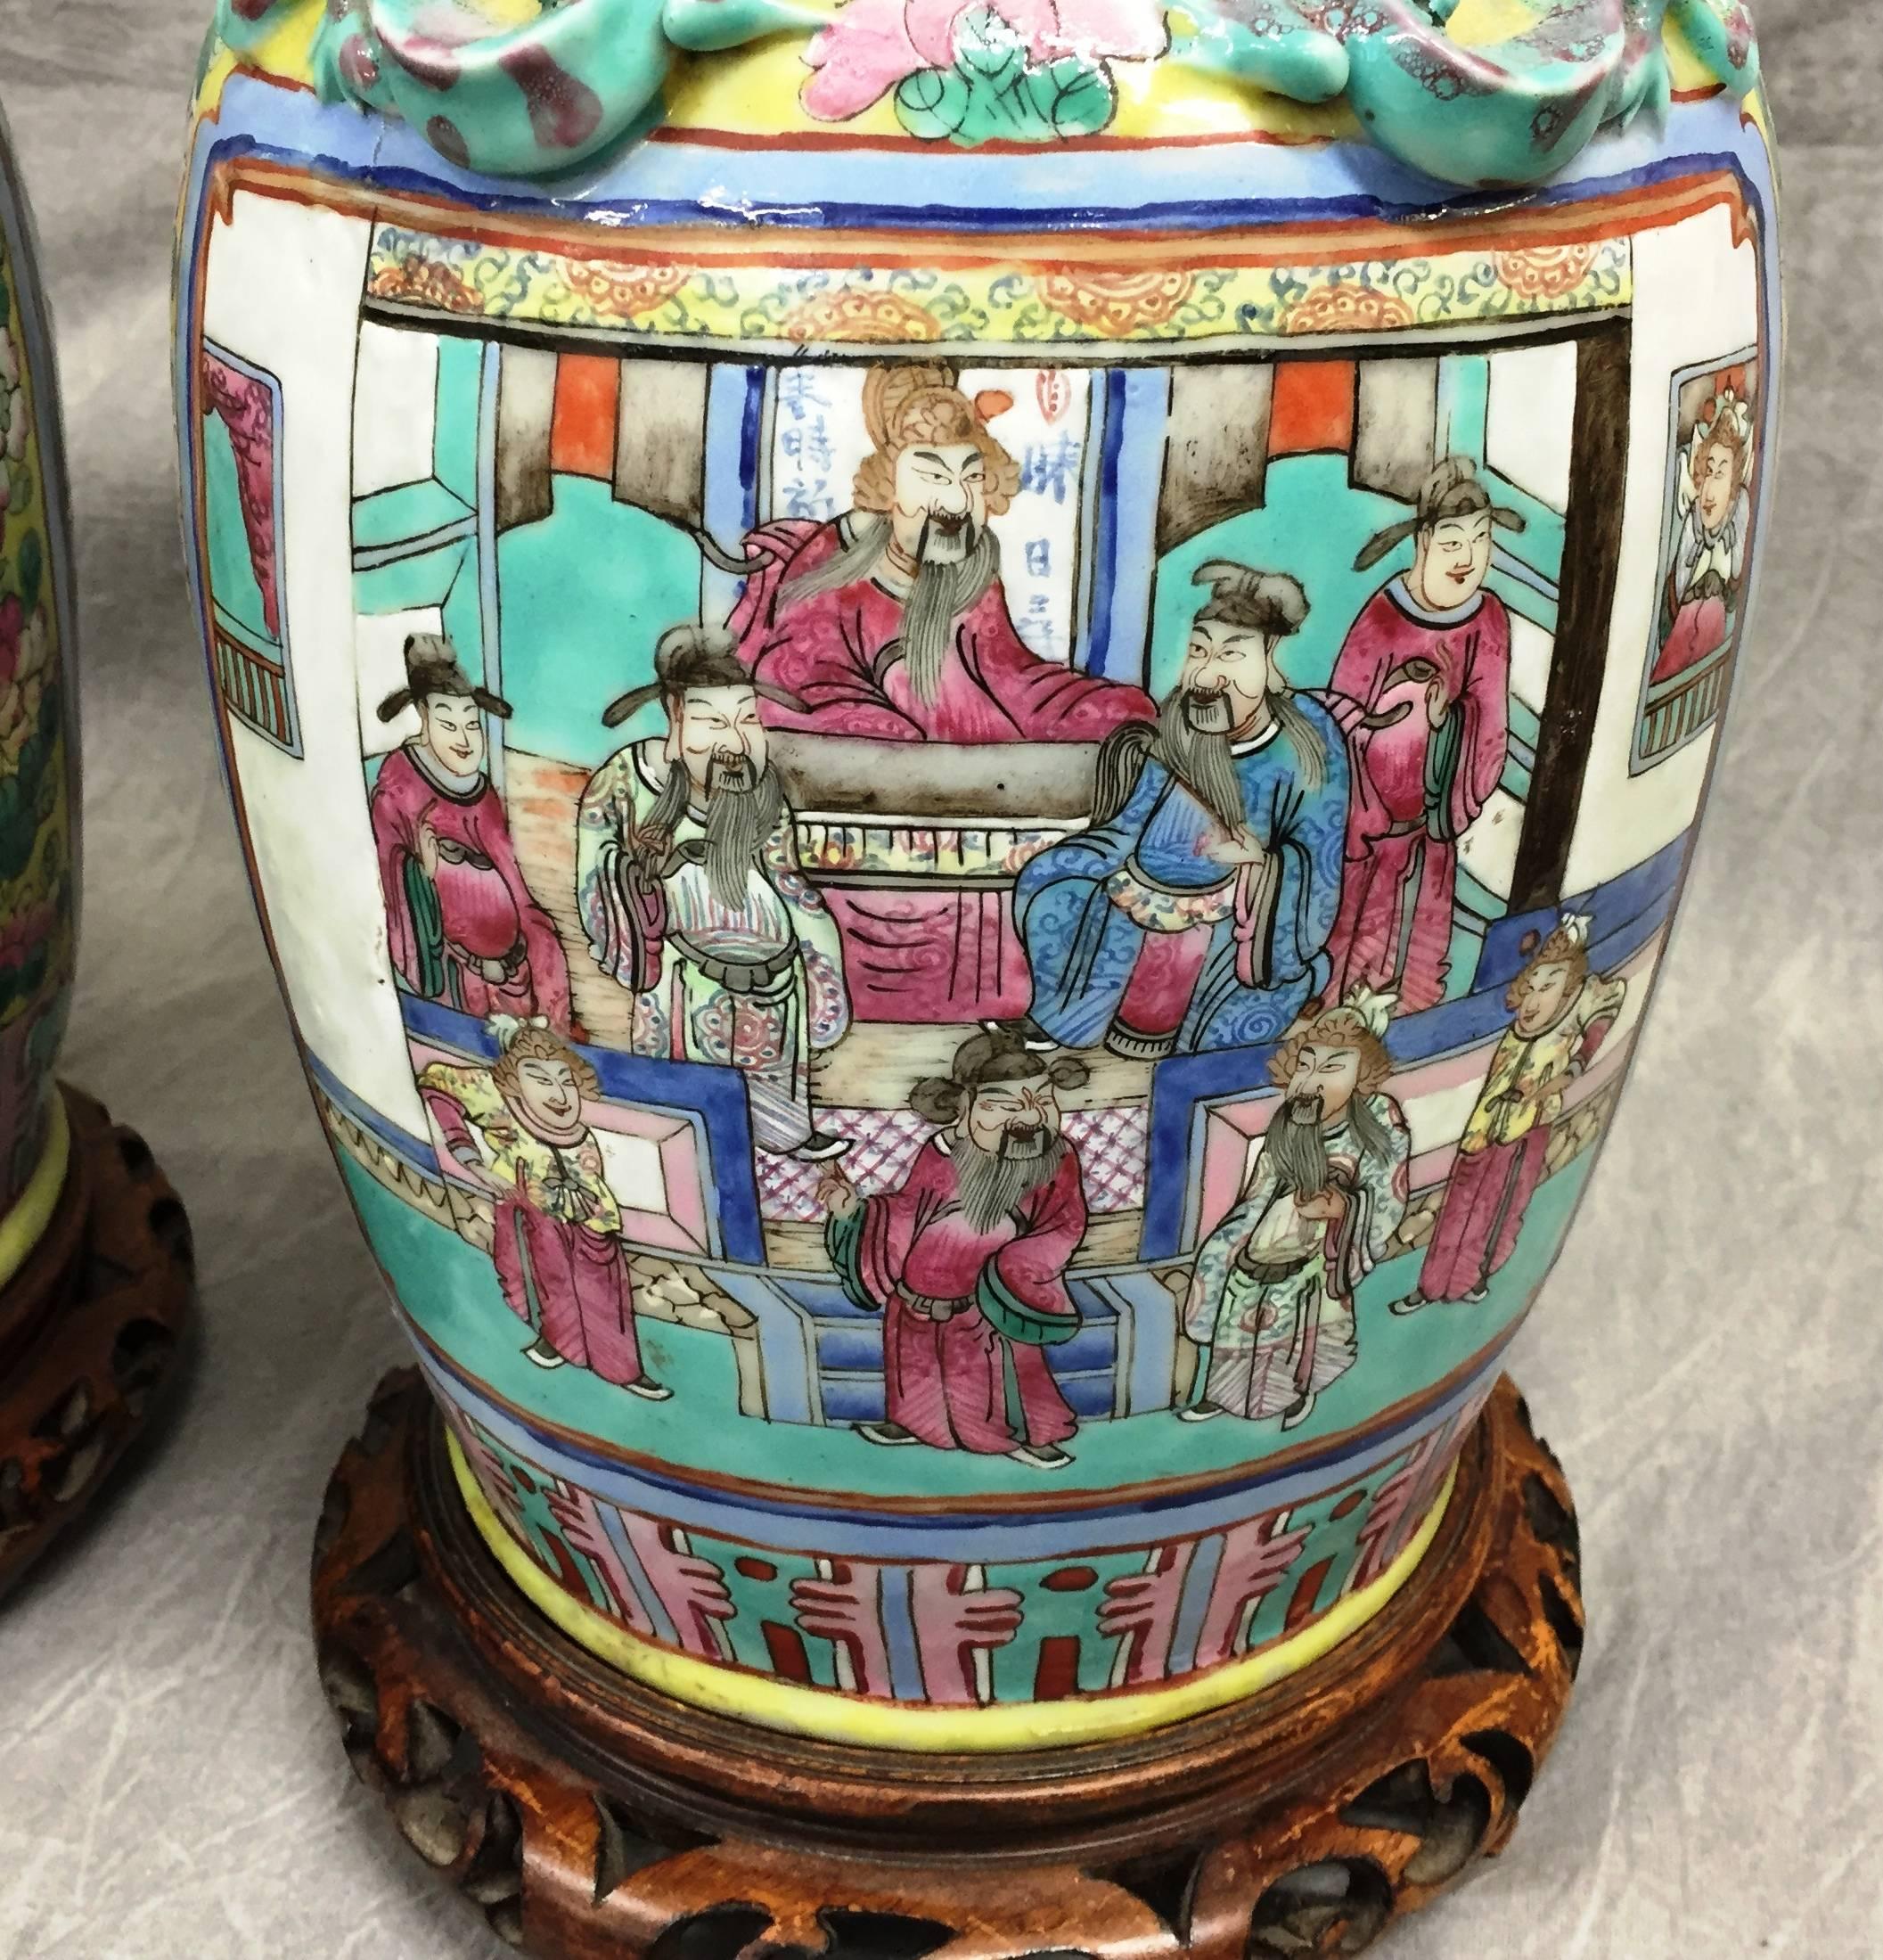 Paire de lampes tournées de bonne qualité, datant du 19ème siècle, en forme de vases de la famille rose. Les panneaux sont ornés de diverses scènes classiques et sont montés sur des supports en bois sculpté.